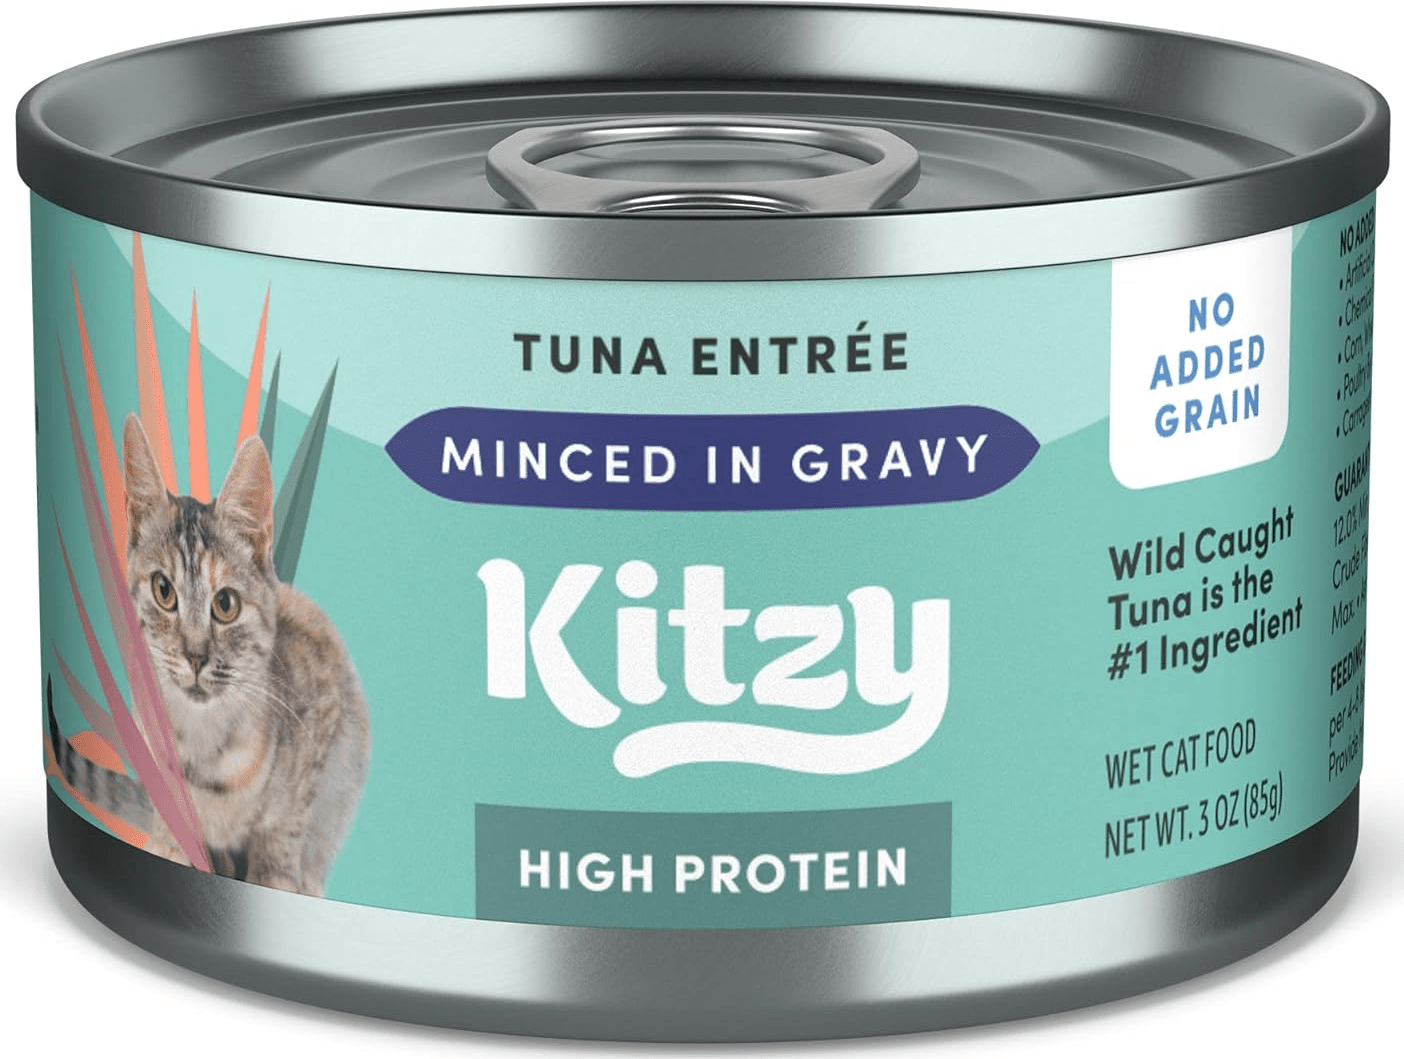 Kitzy High Protein Wild Caught Tuna In Gravy